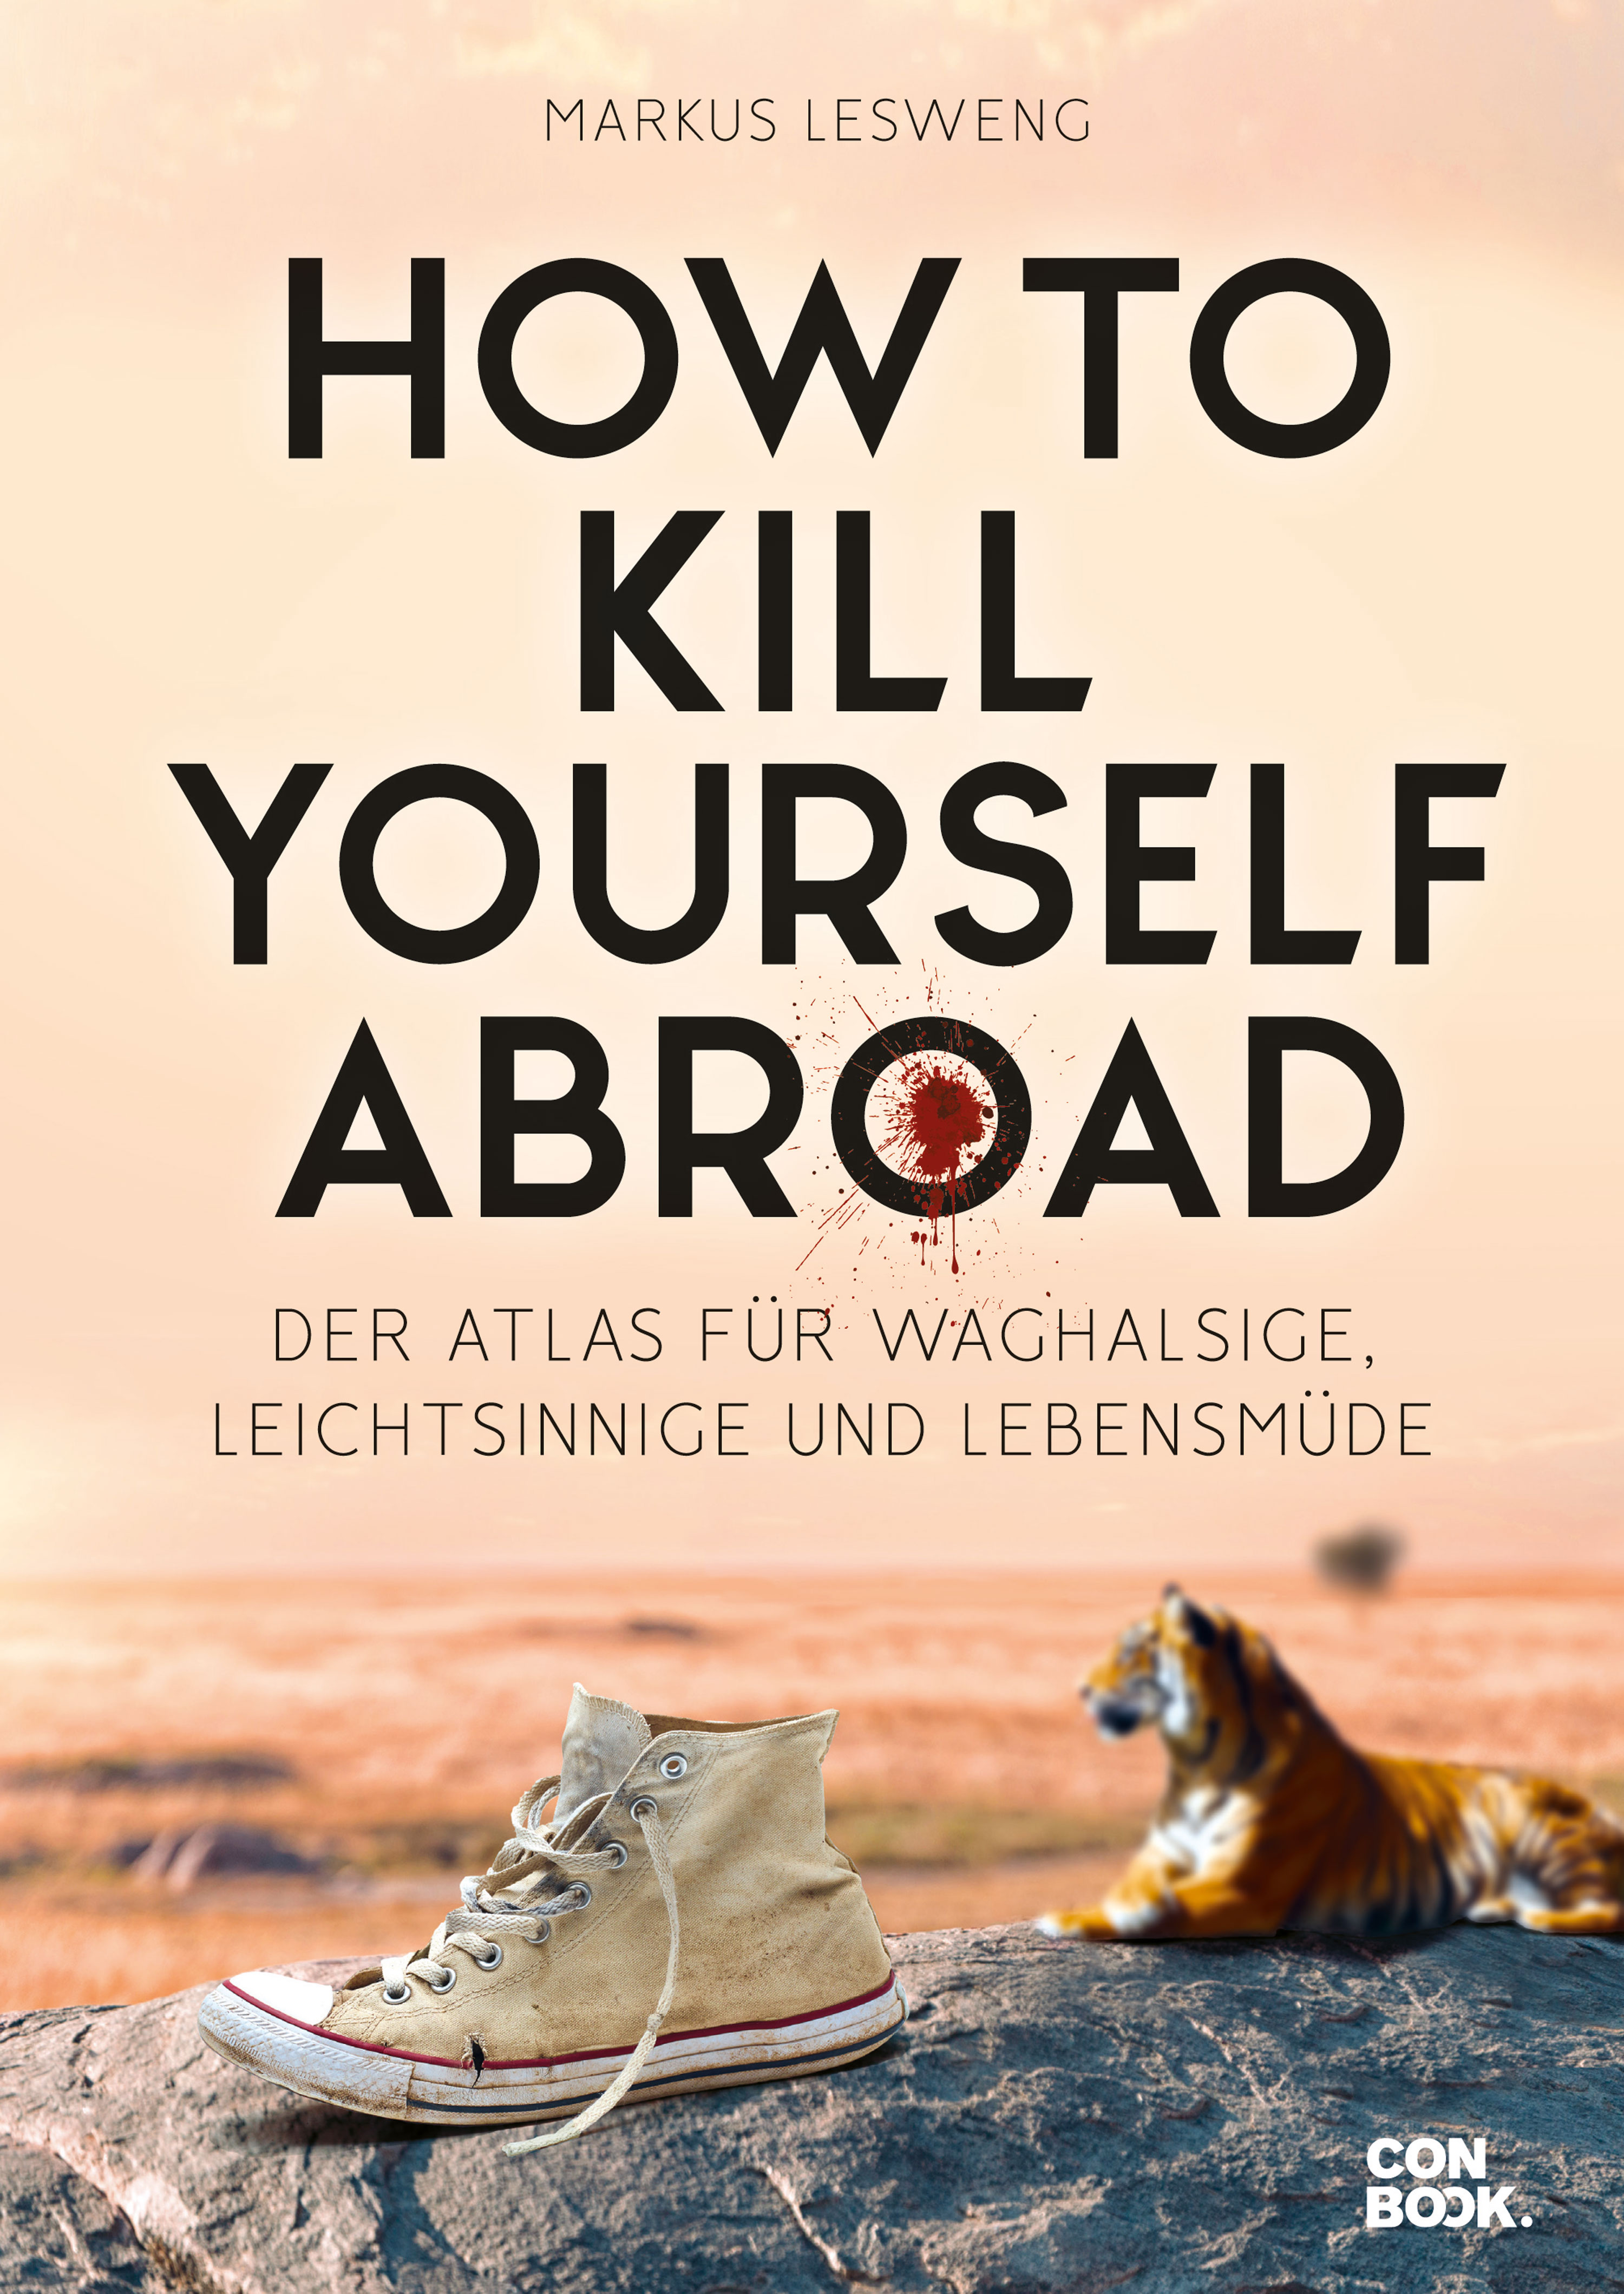 Rezension Buch How to Kill Yourself Abroad von Markus Lesweng, Atlas für Waghalsige, Leichtsinnige und Lebensmüde aus dem Verlag ConBook.